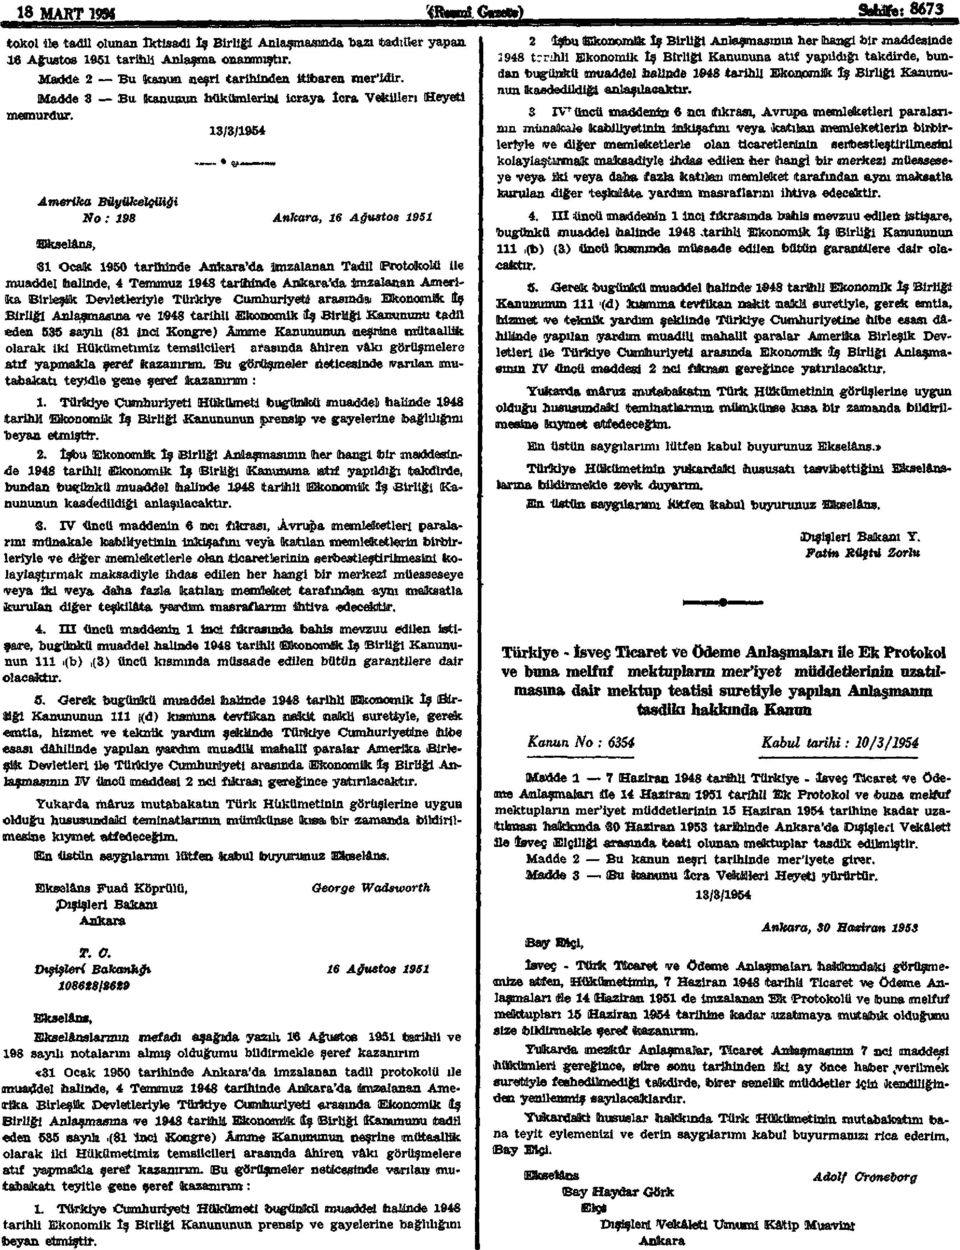 Amerika Büyükelçiliği No: 198 Ankara, 16 Ağustos 1951 (Ekselans, 31 Ocak 1950 tarihinde Ankara'da imzalanan Tadil (Protokolü ile muaddel halinde, 4 Temmuz 1948 tarihinde Ankara'da imzalanan Amerika